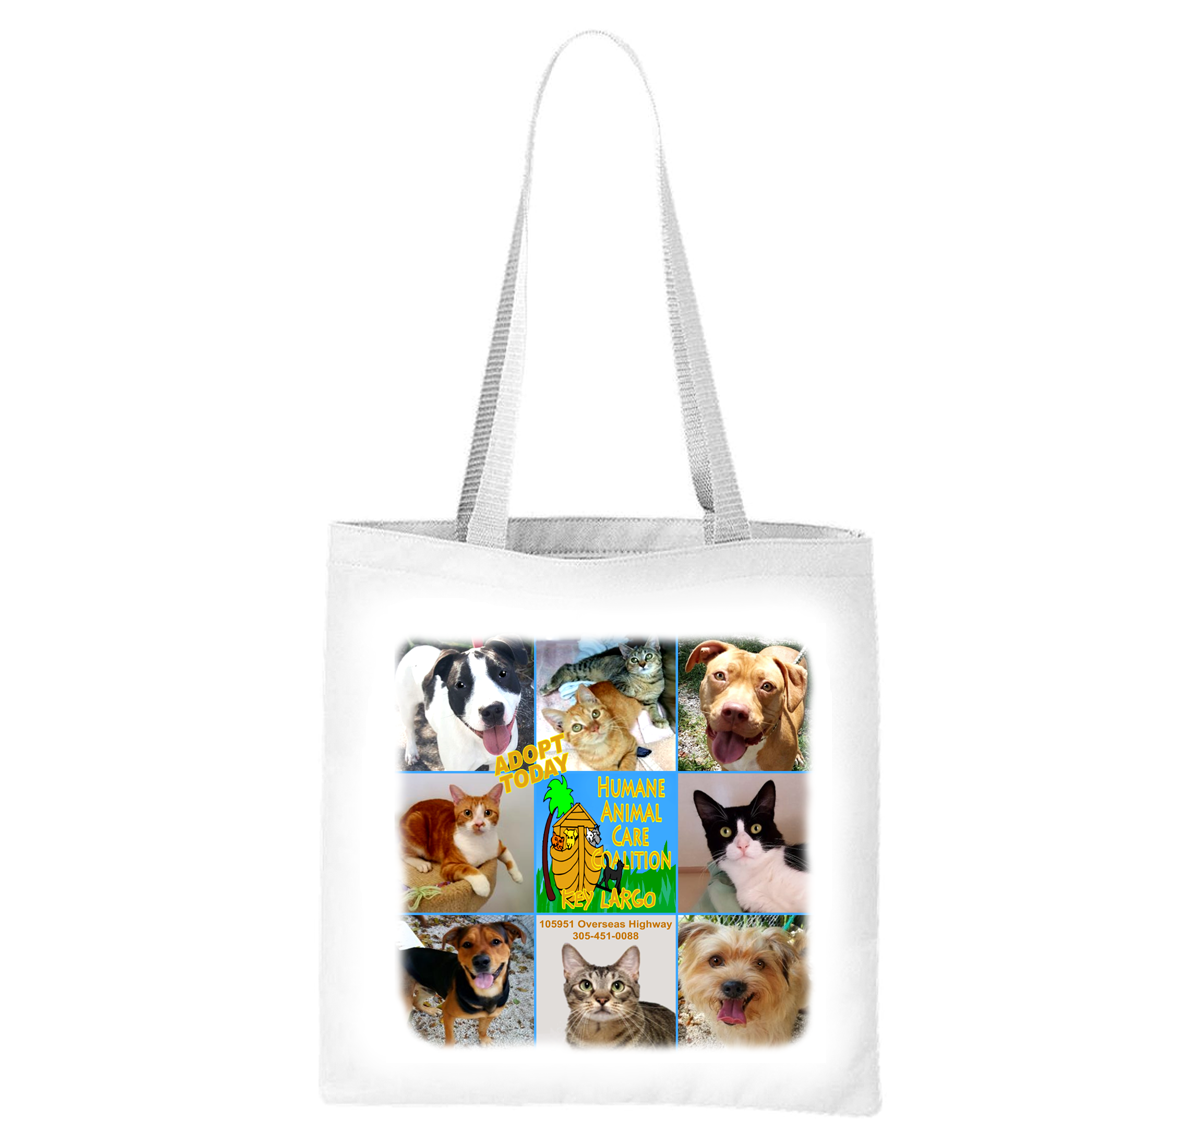 Humane Animal Care Coalition Liberty Bag